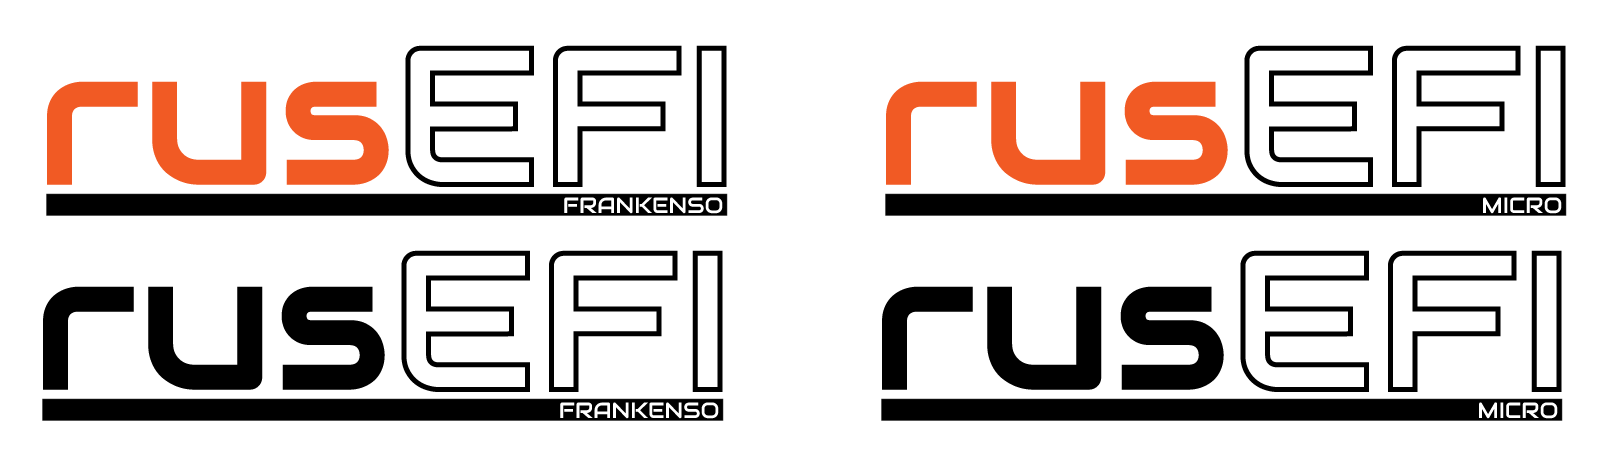 rusefi_logo_names.png